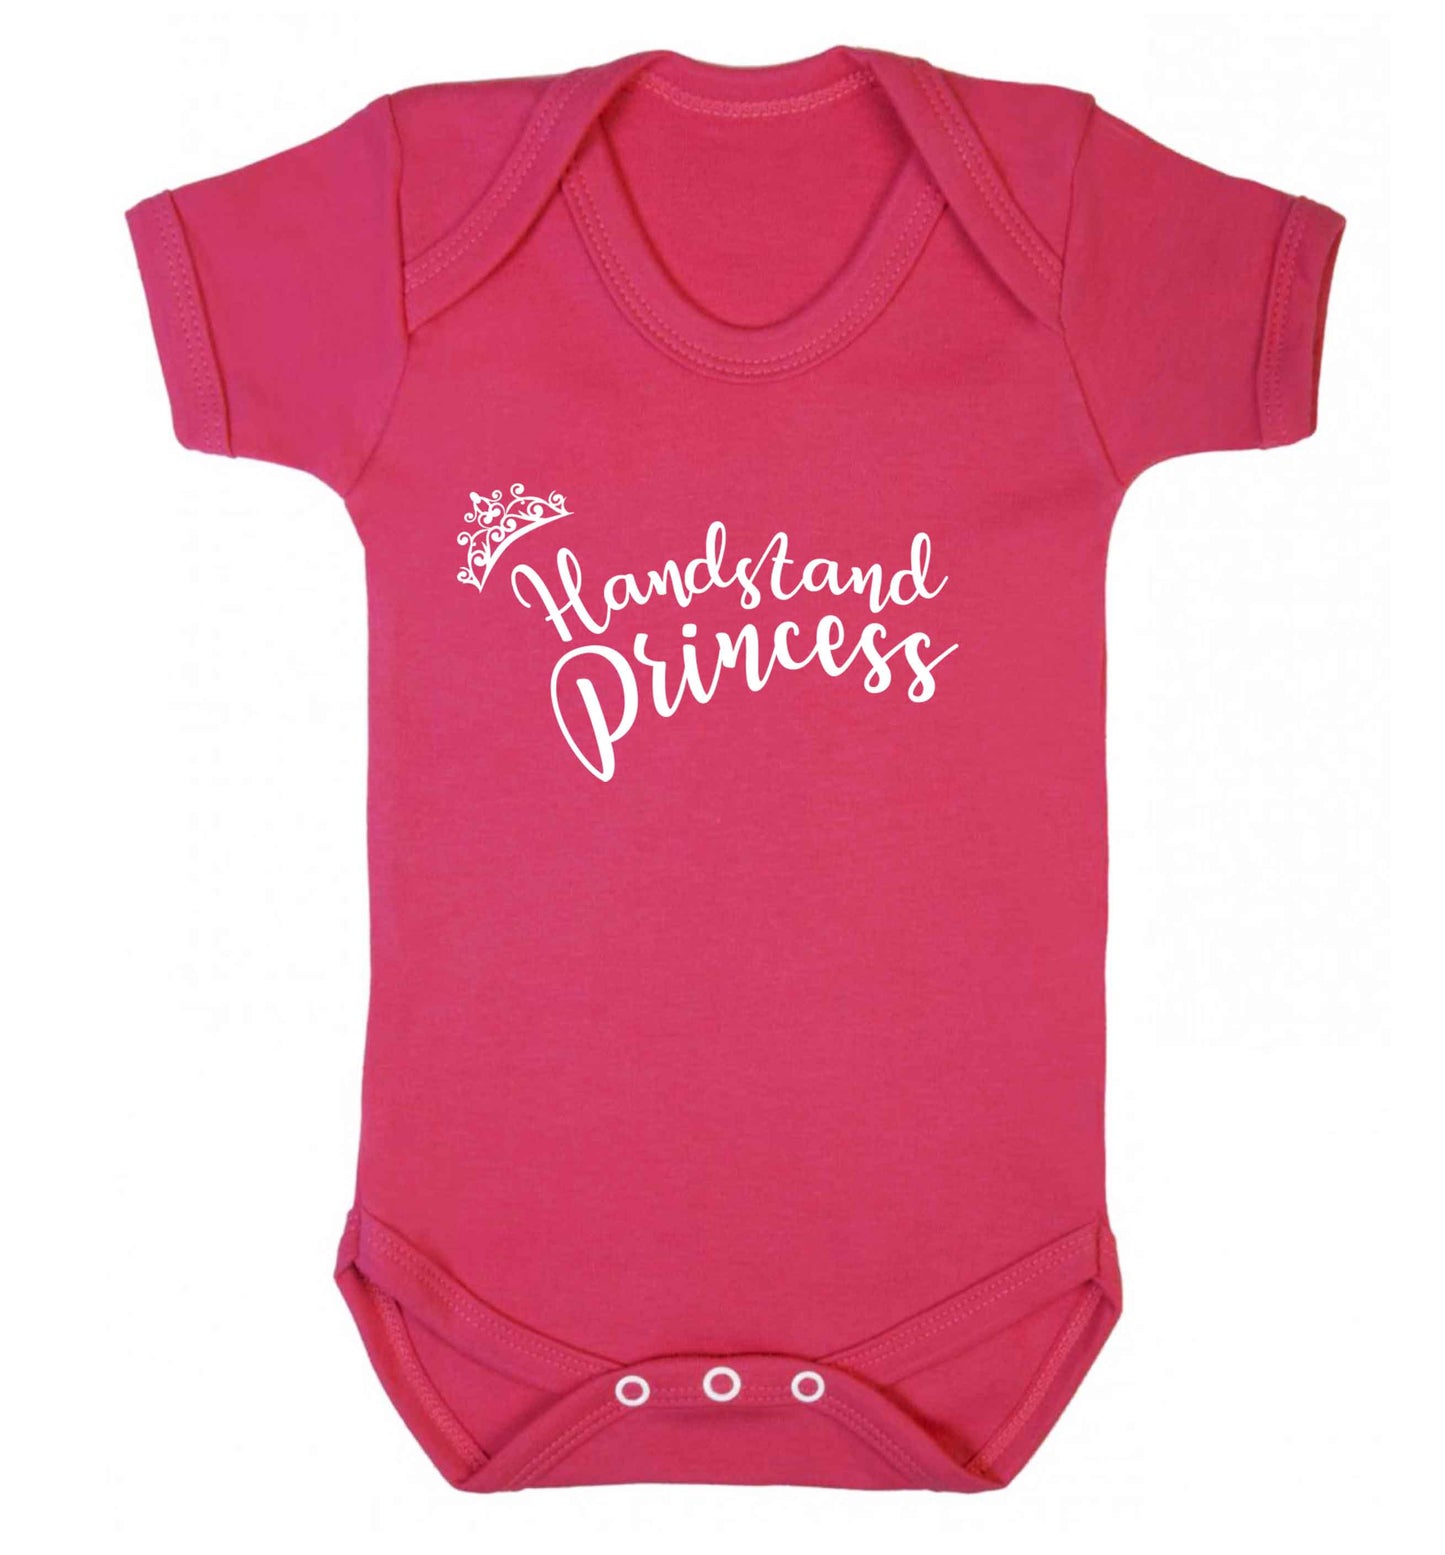 Handstand princess Baby Vest dark pink 18-24 months